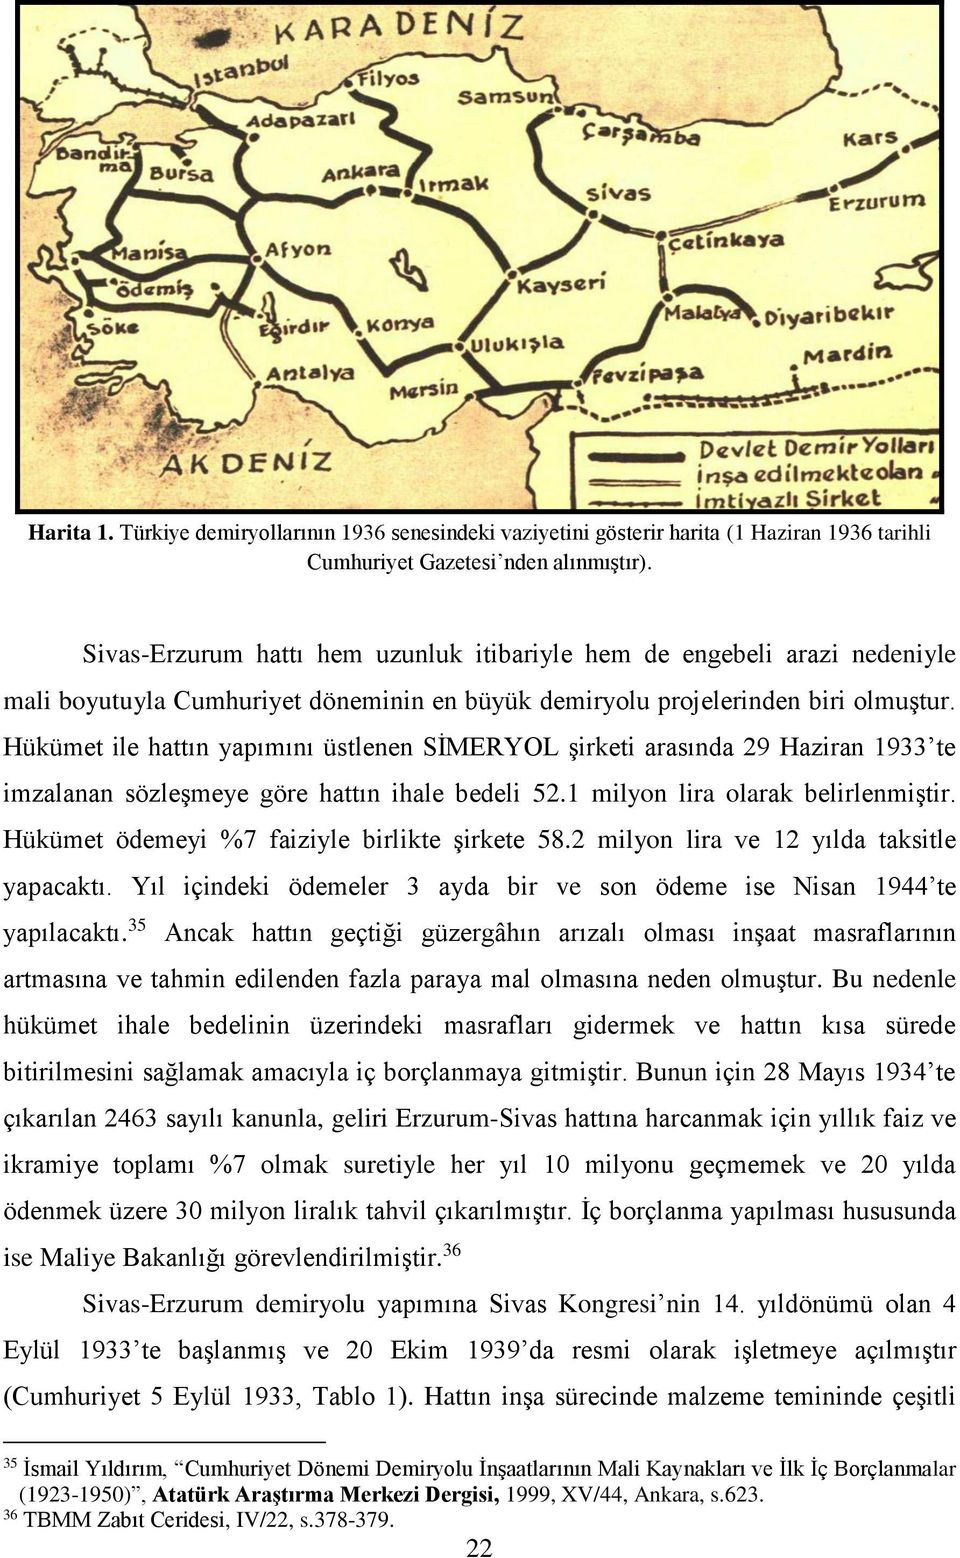 Hükümet ile hattın yapımını üstlenen SİMERYOL şirketi arasında 29 Haziran 1933 te imzalanan sözleşmeye göre hattın ihale bedeli 52.1 milyon lira olarak belirlenmiştir.